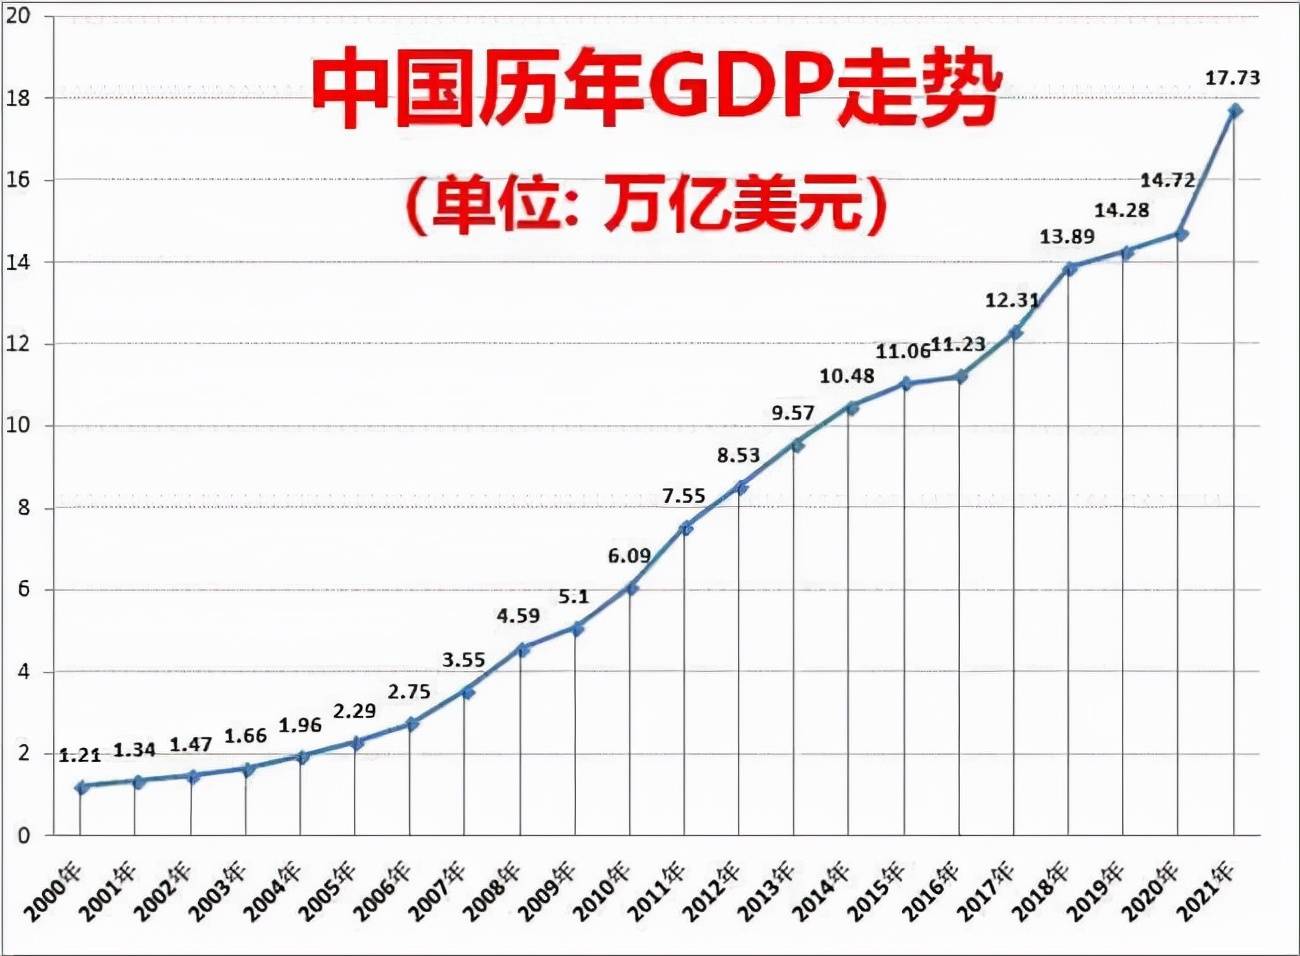 一年增长一个印度2000年中国gdp是印度的25倍那么2021年呢